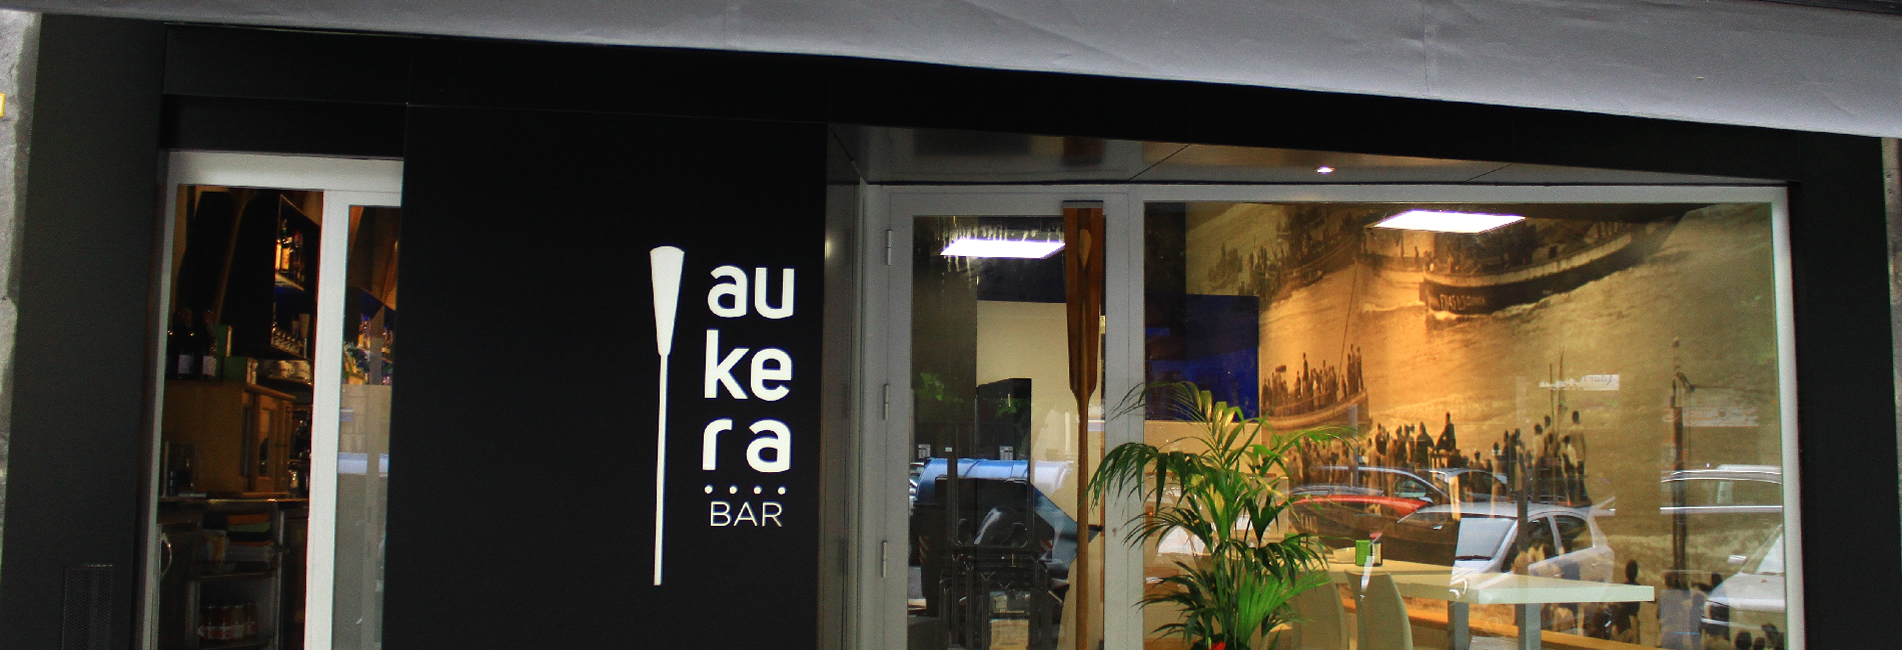 Cianco a collaboré avec l’architecte d’intérieurs Alfonso Moreno Salomé dans la réhabilitation et décoration du bar Aukera à San Sebastián